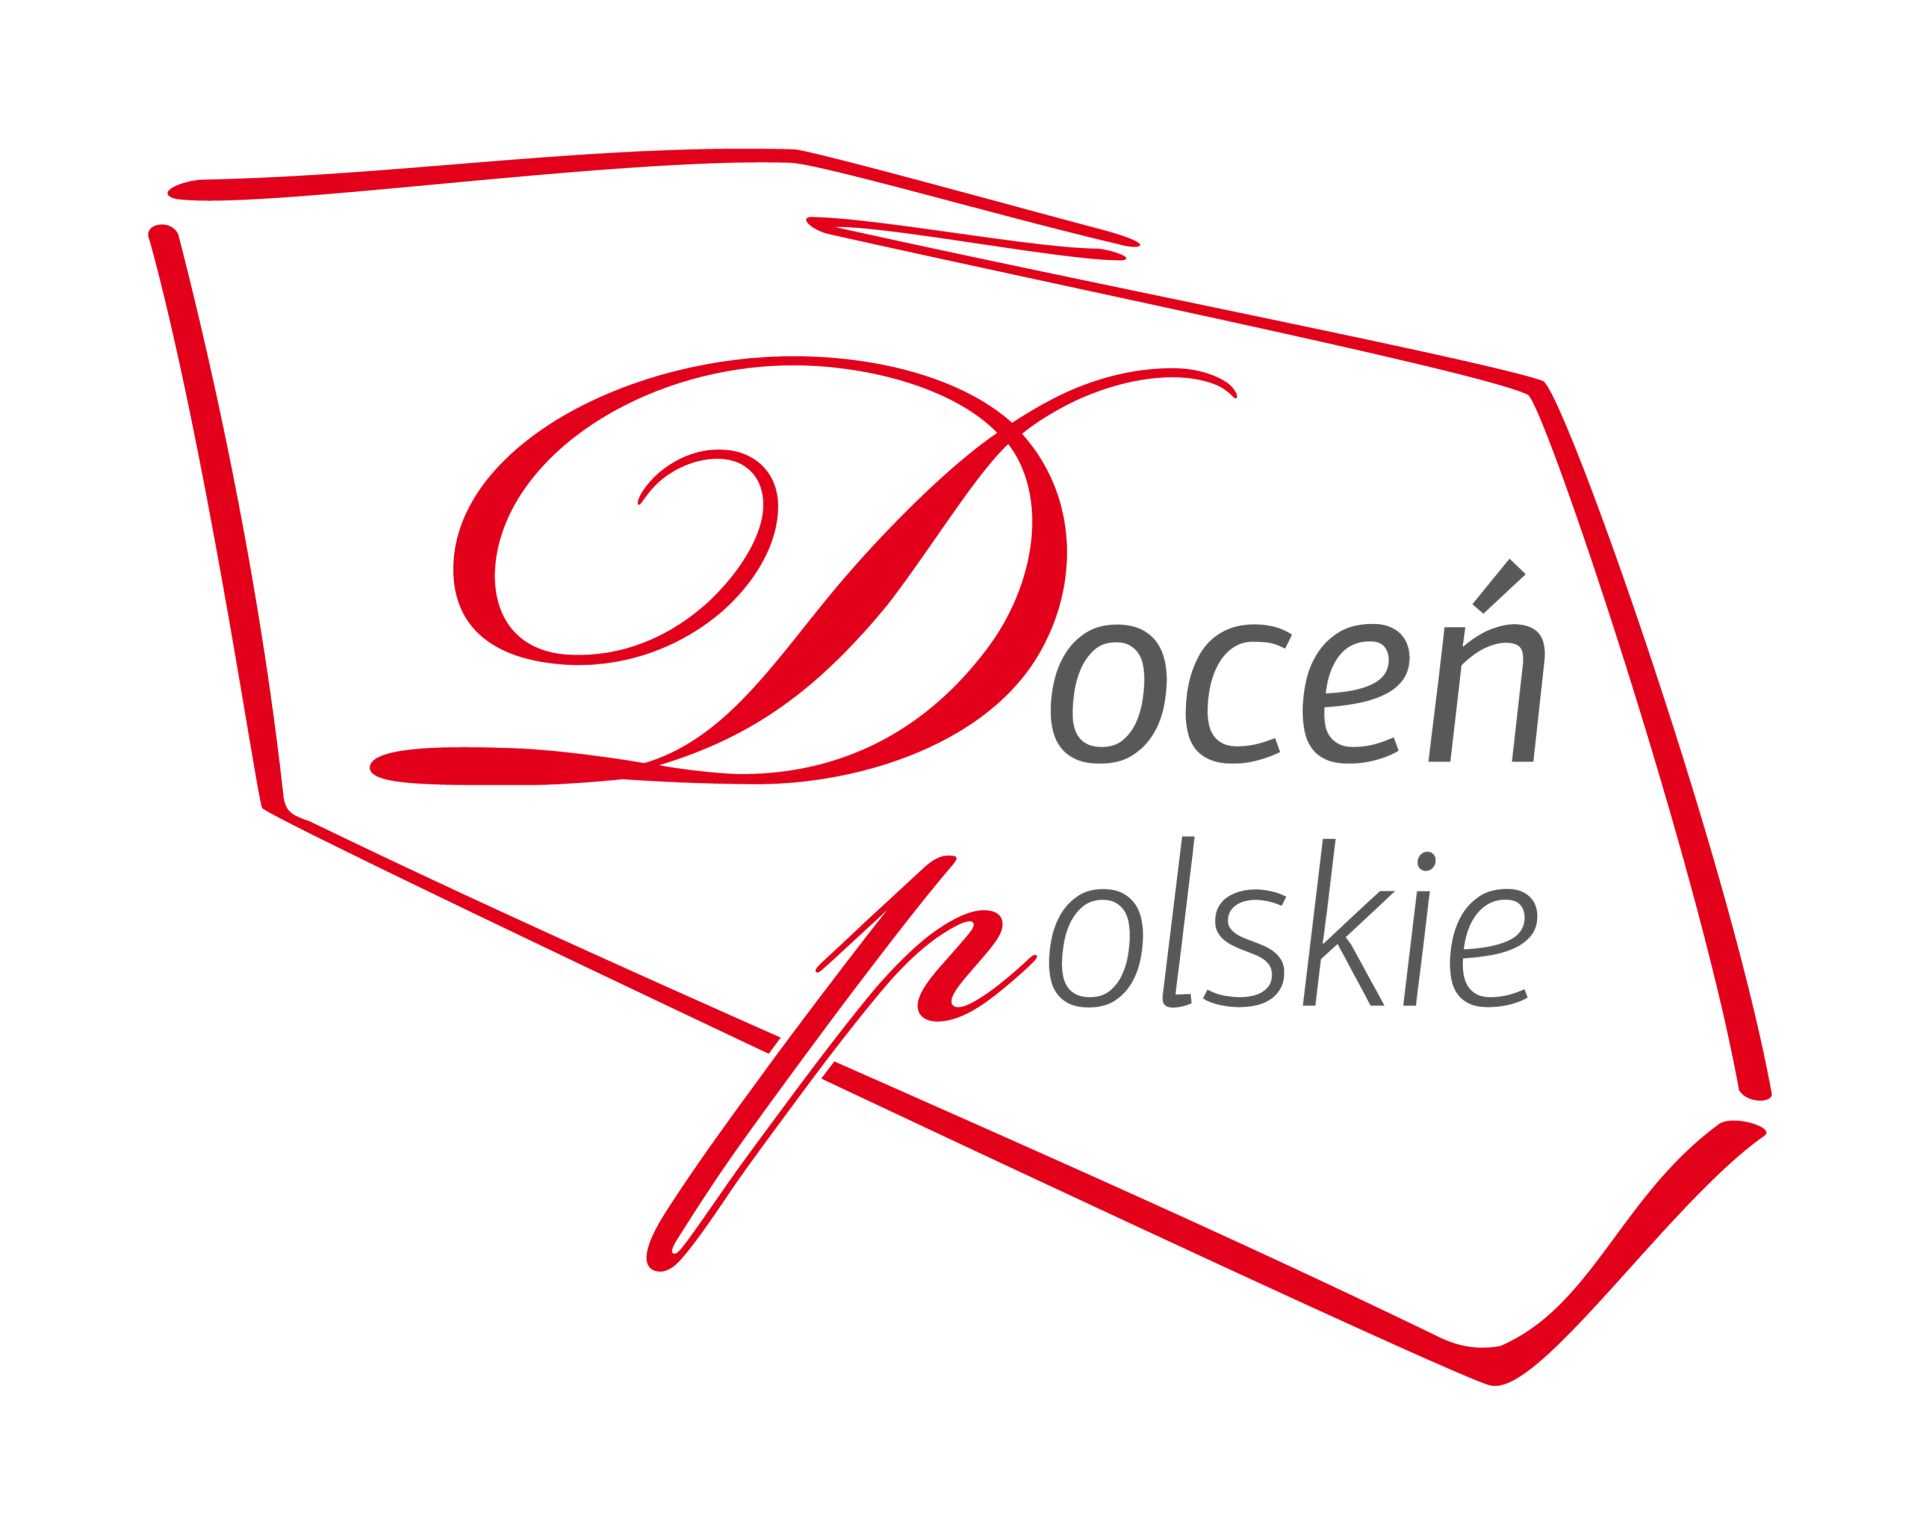 XIV audyt programu „Doceń polskie”